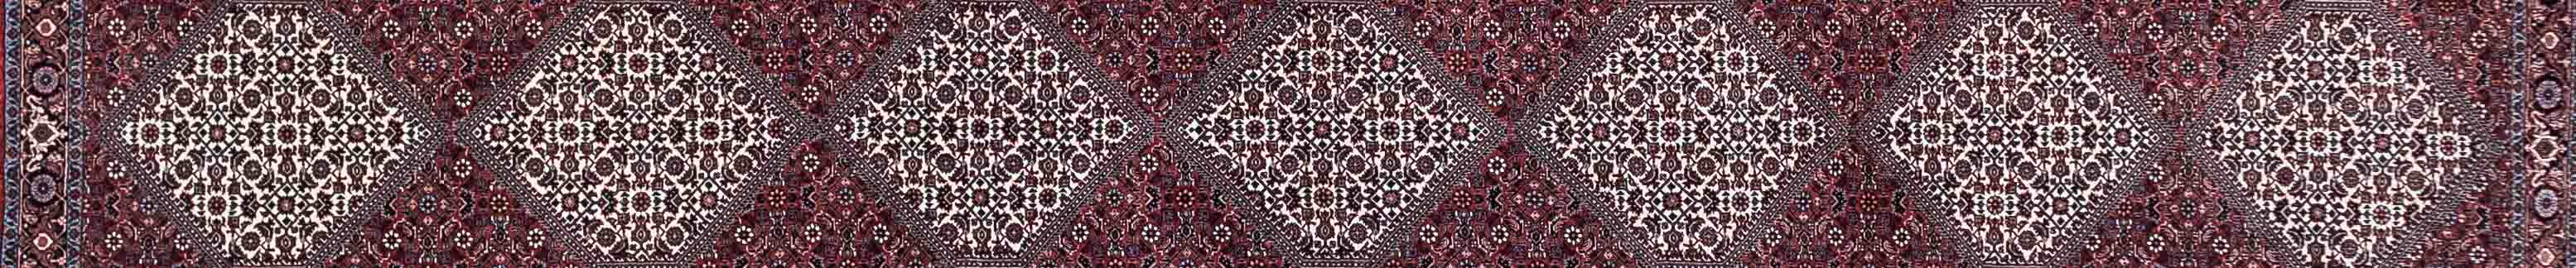 Bidjar Persian Carpet Rug N1Carpet Canada Montreal Tapis Persan 3450